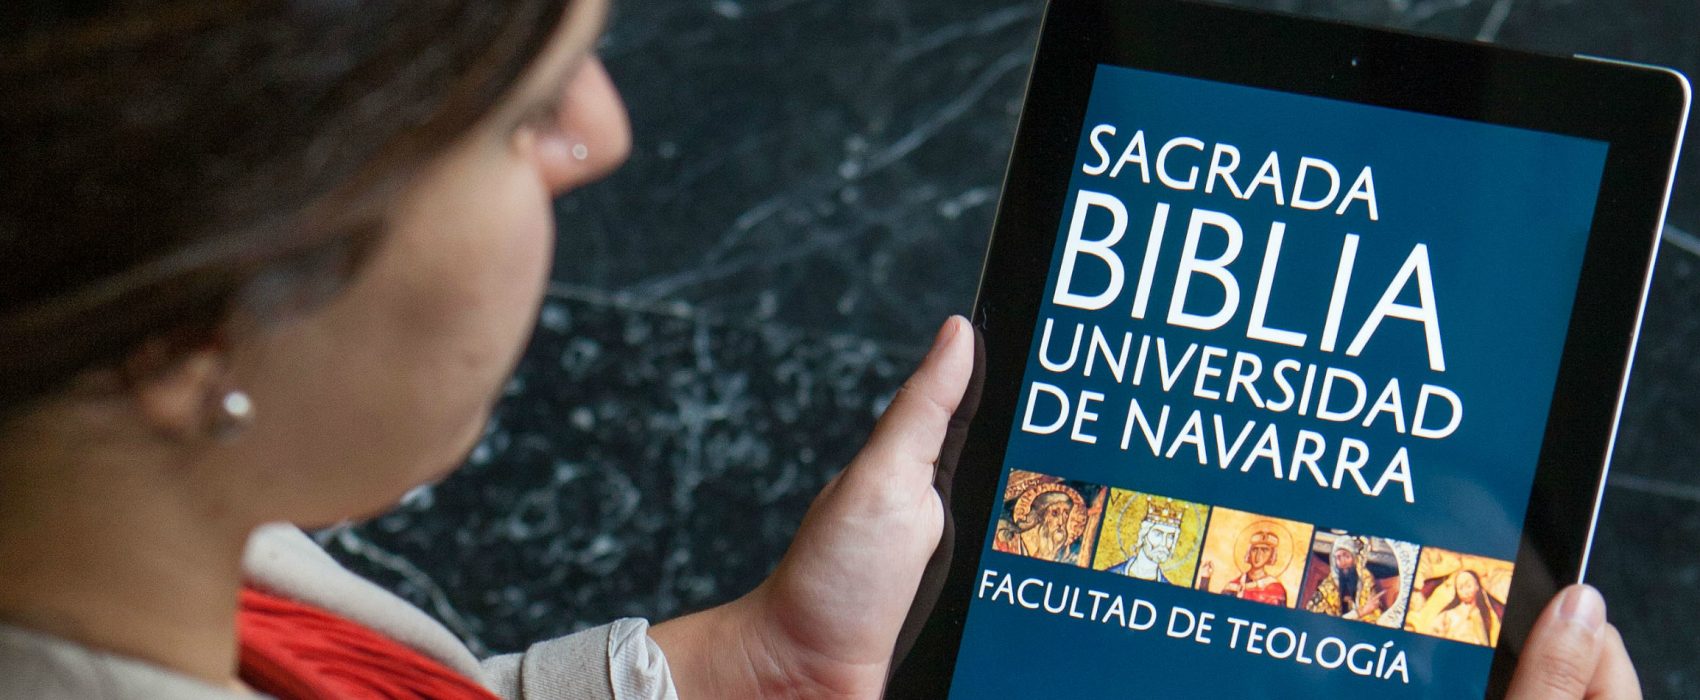 Biblia Universidad de Navarra 1700x700 - Edición digital de la Biblia de la Universidad de Navarra